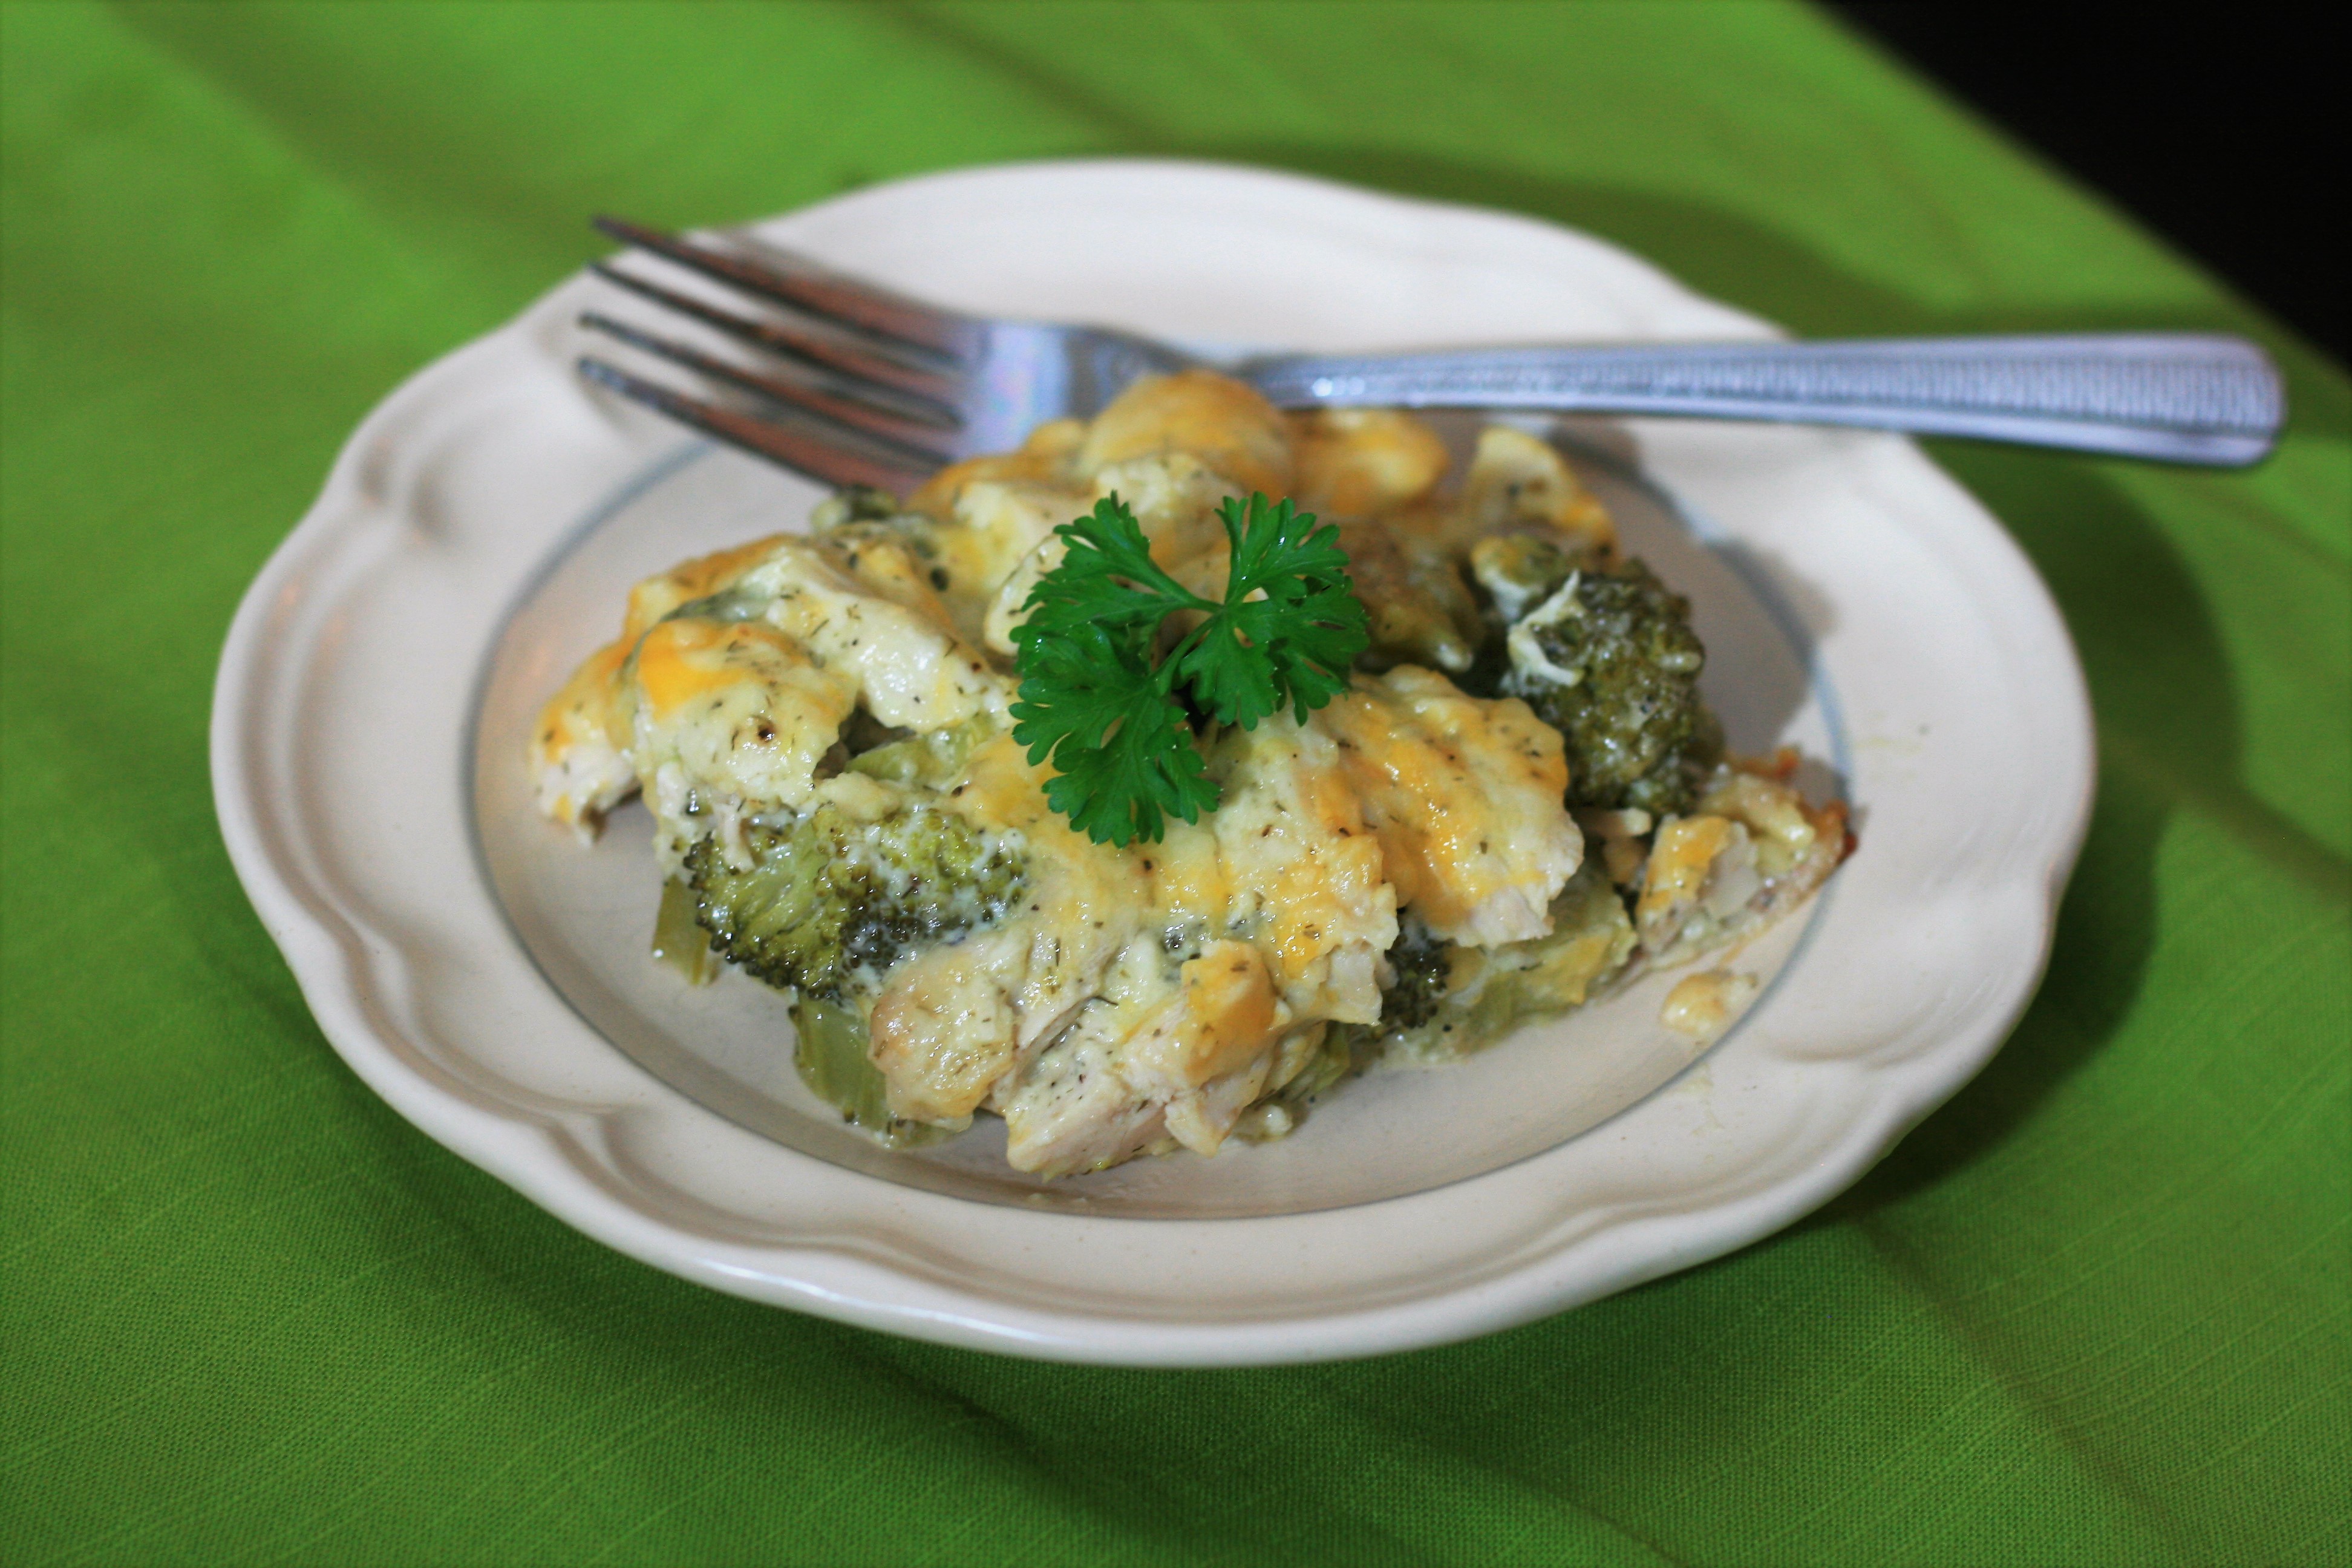 Cheesy Broccoli and Chicken Casserole